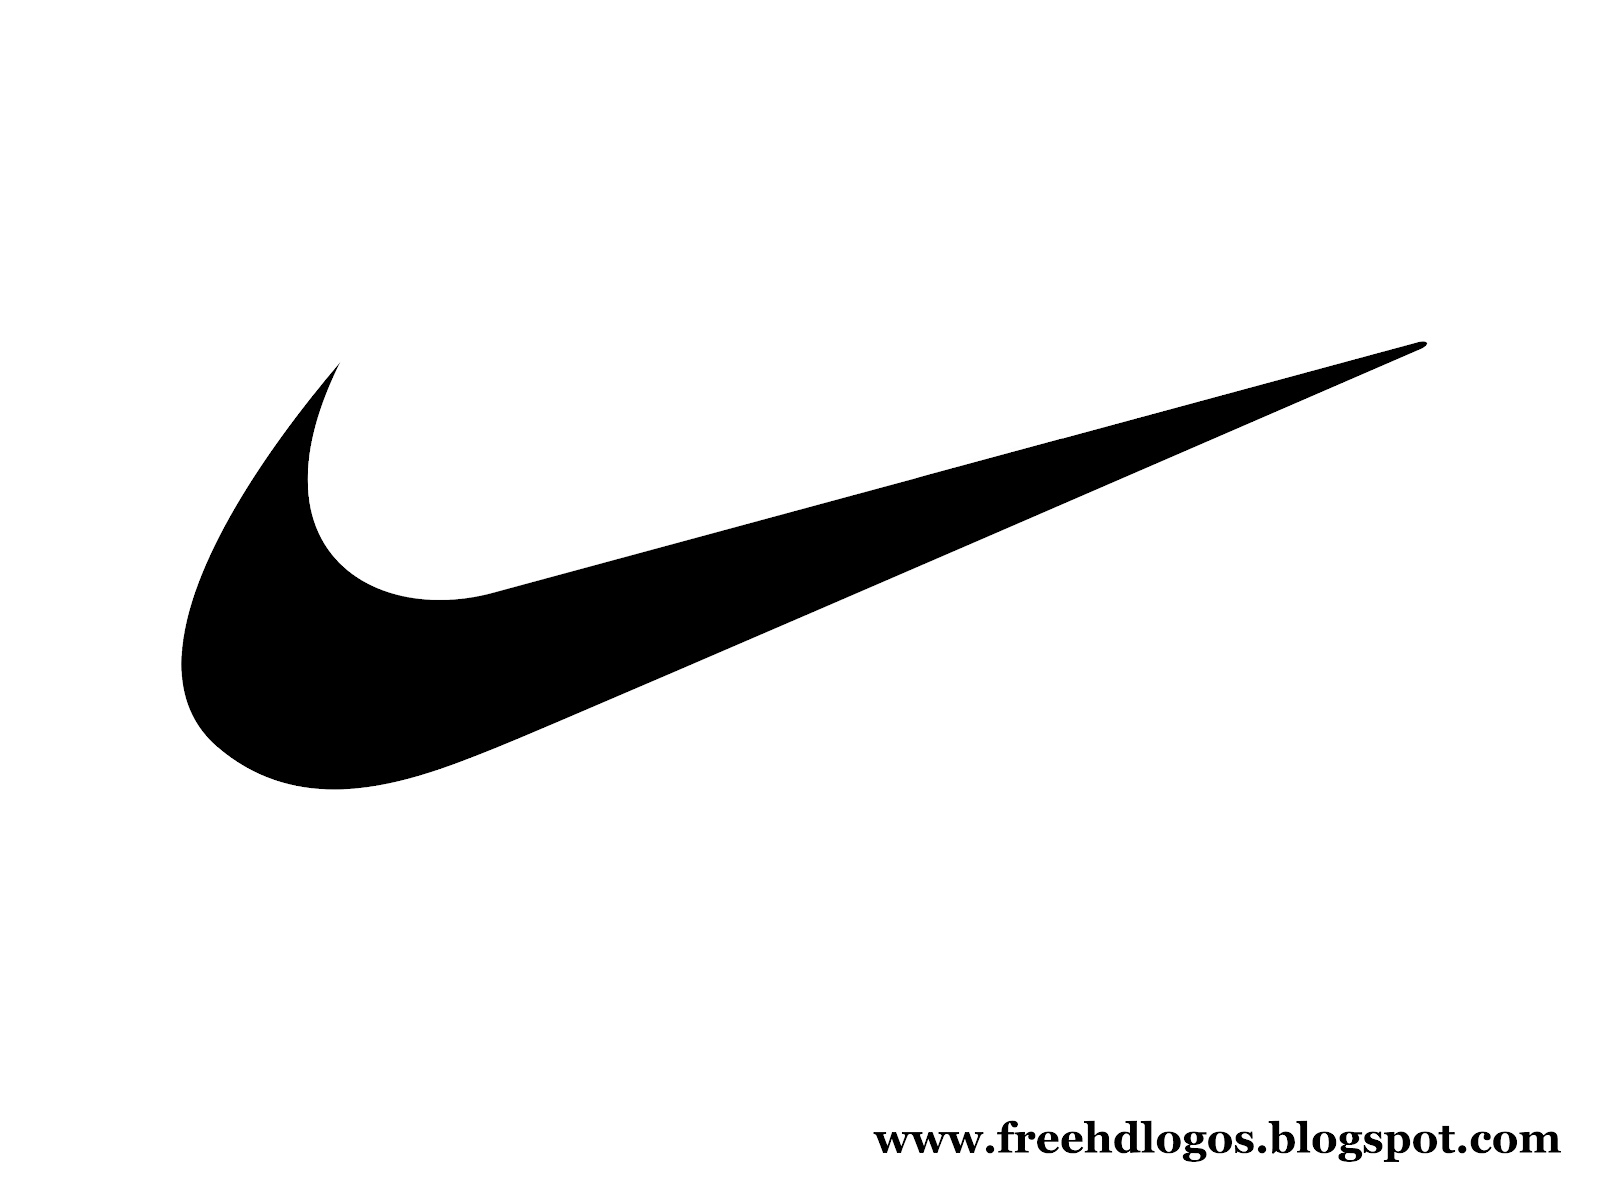 Hãy khám phá hình ảnh Nike Logo PNG đầy đủ và chất lượng cao, để cảm nhận tinh túy của thương hiệu Nike được thể hiện một cách hoàn hảo.